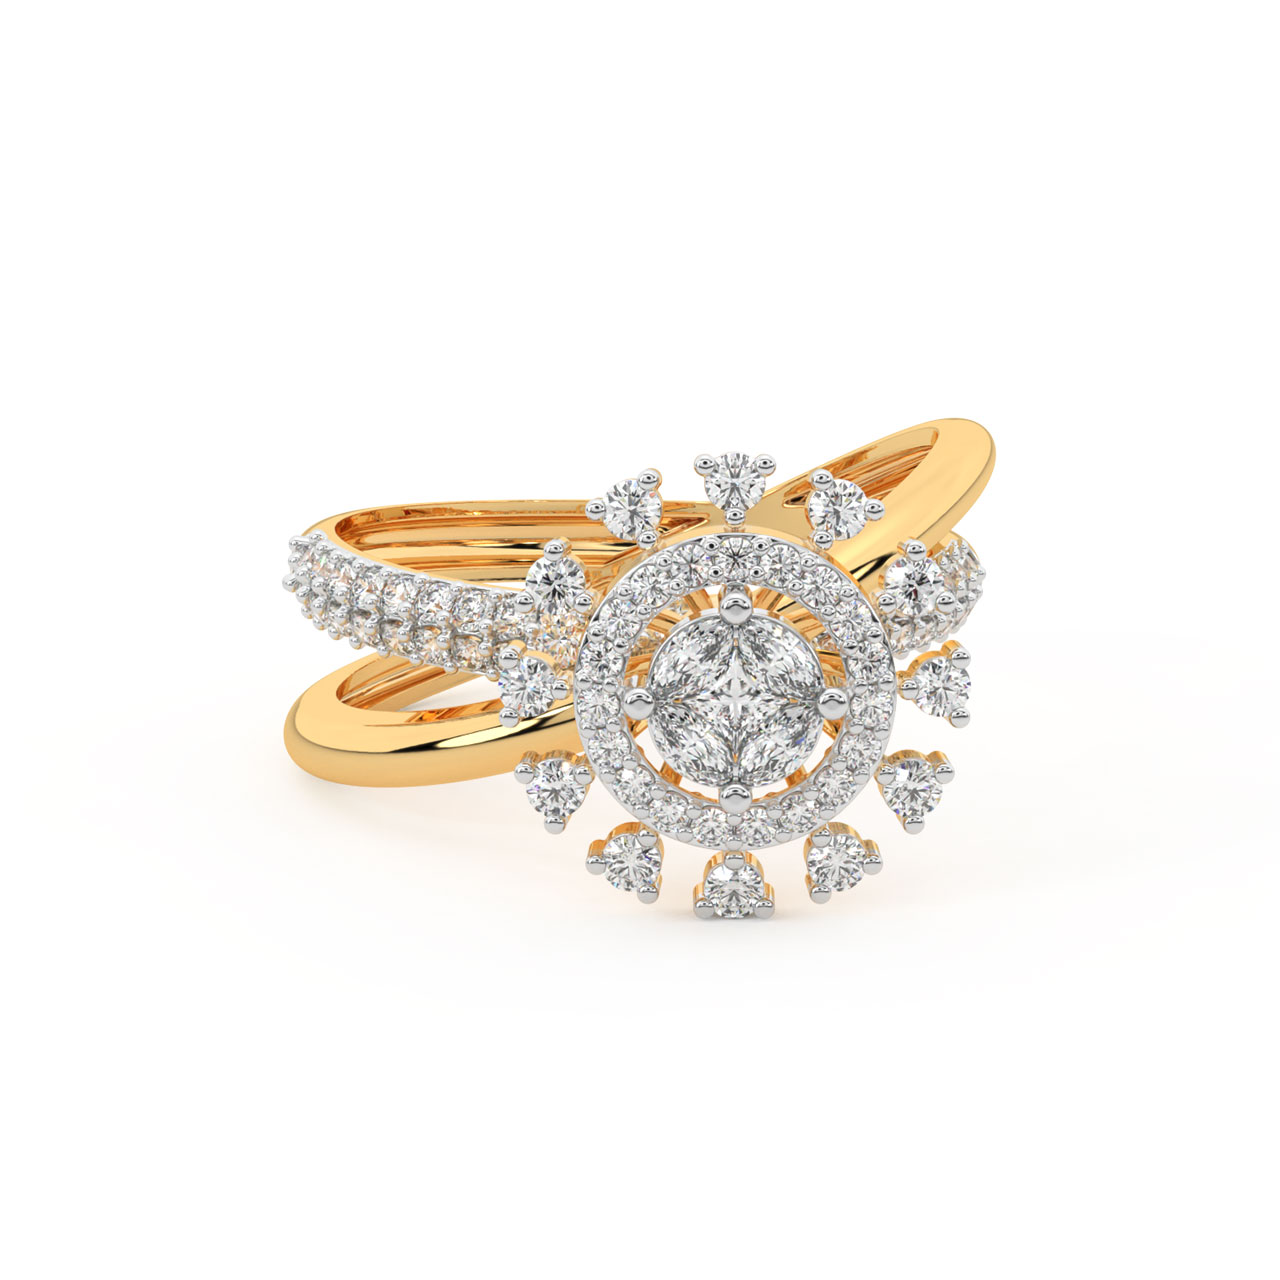 Zakira Round Diamond Engagement Ring